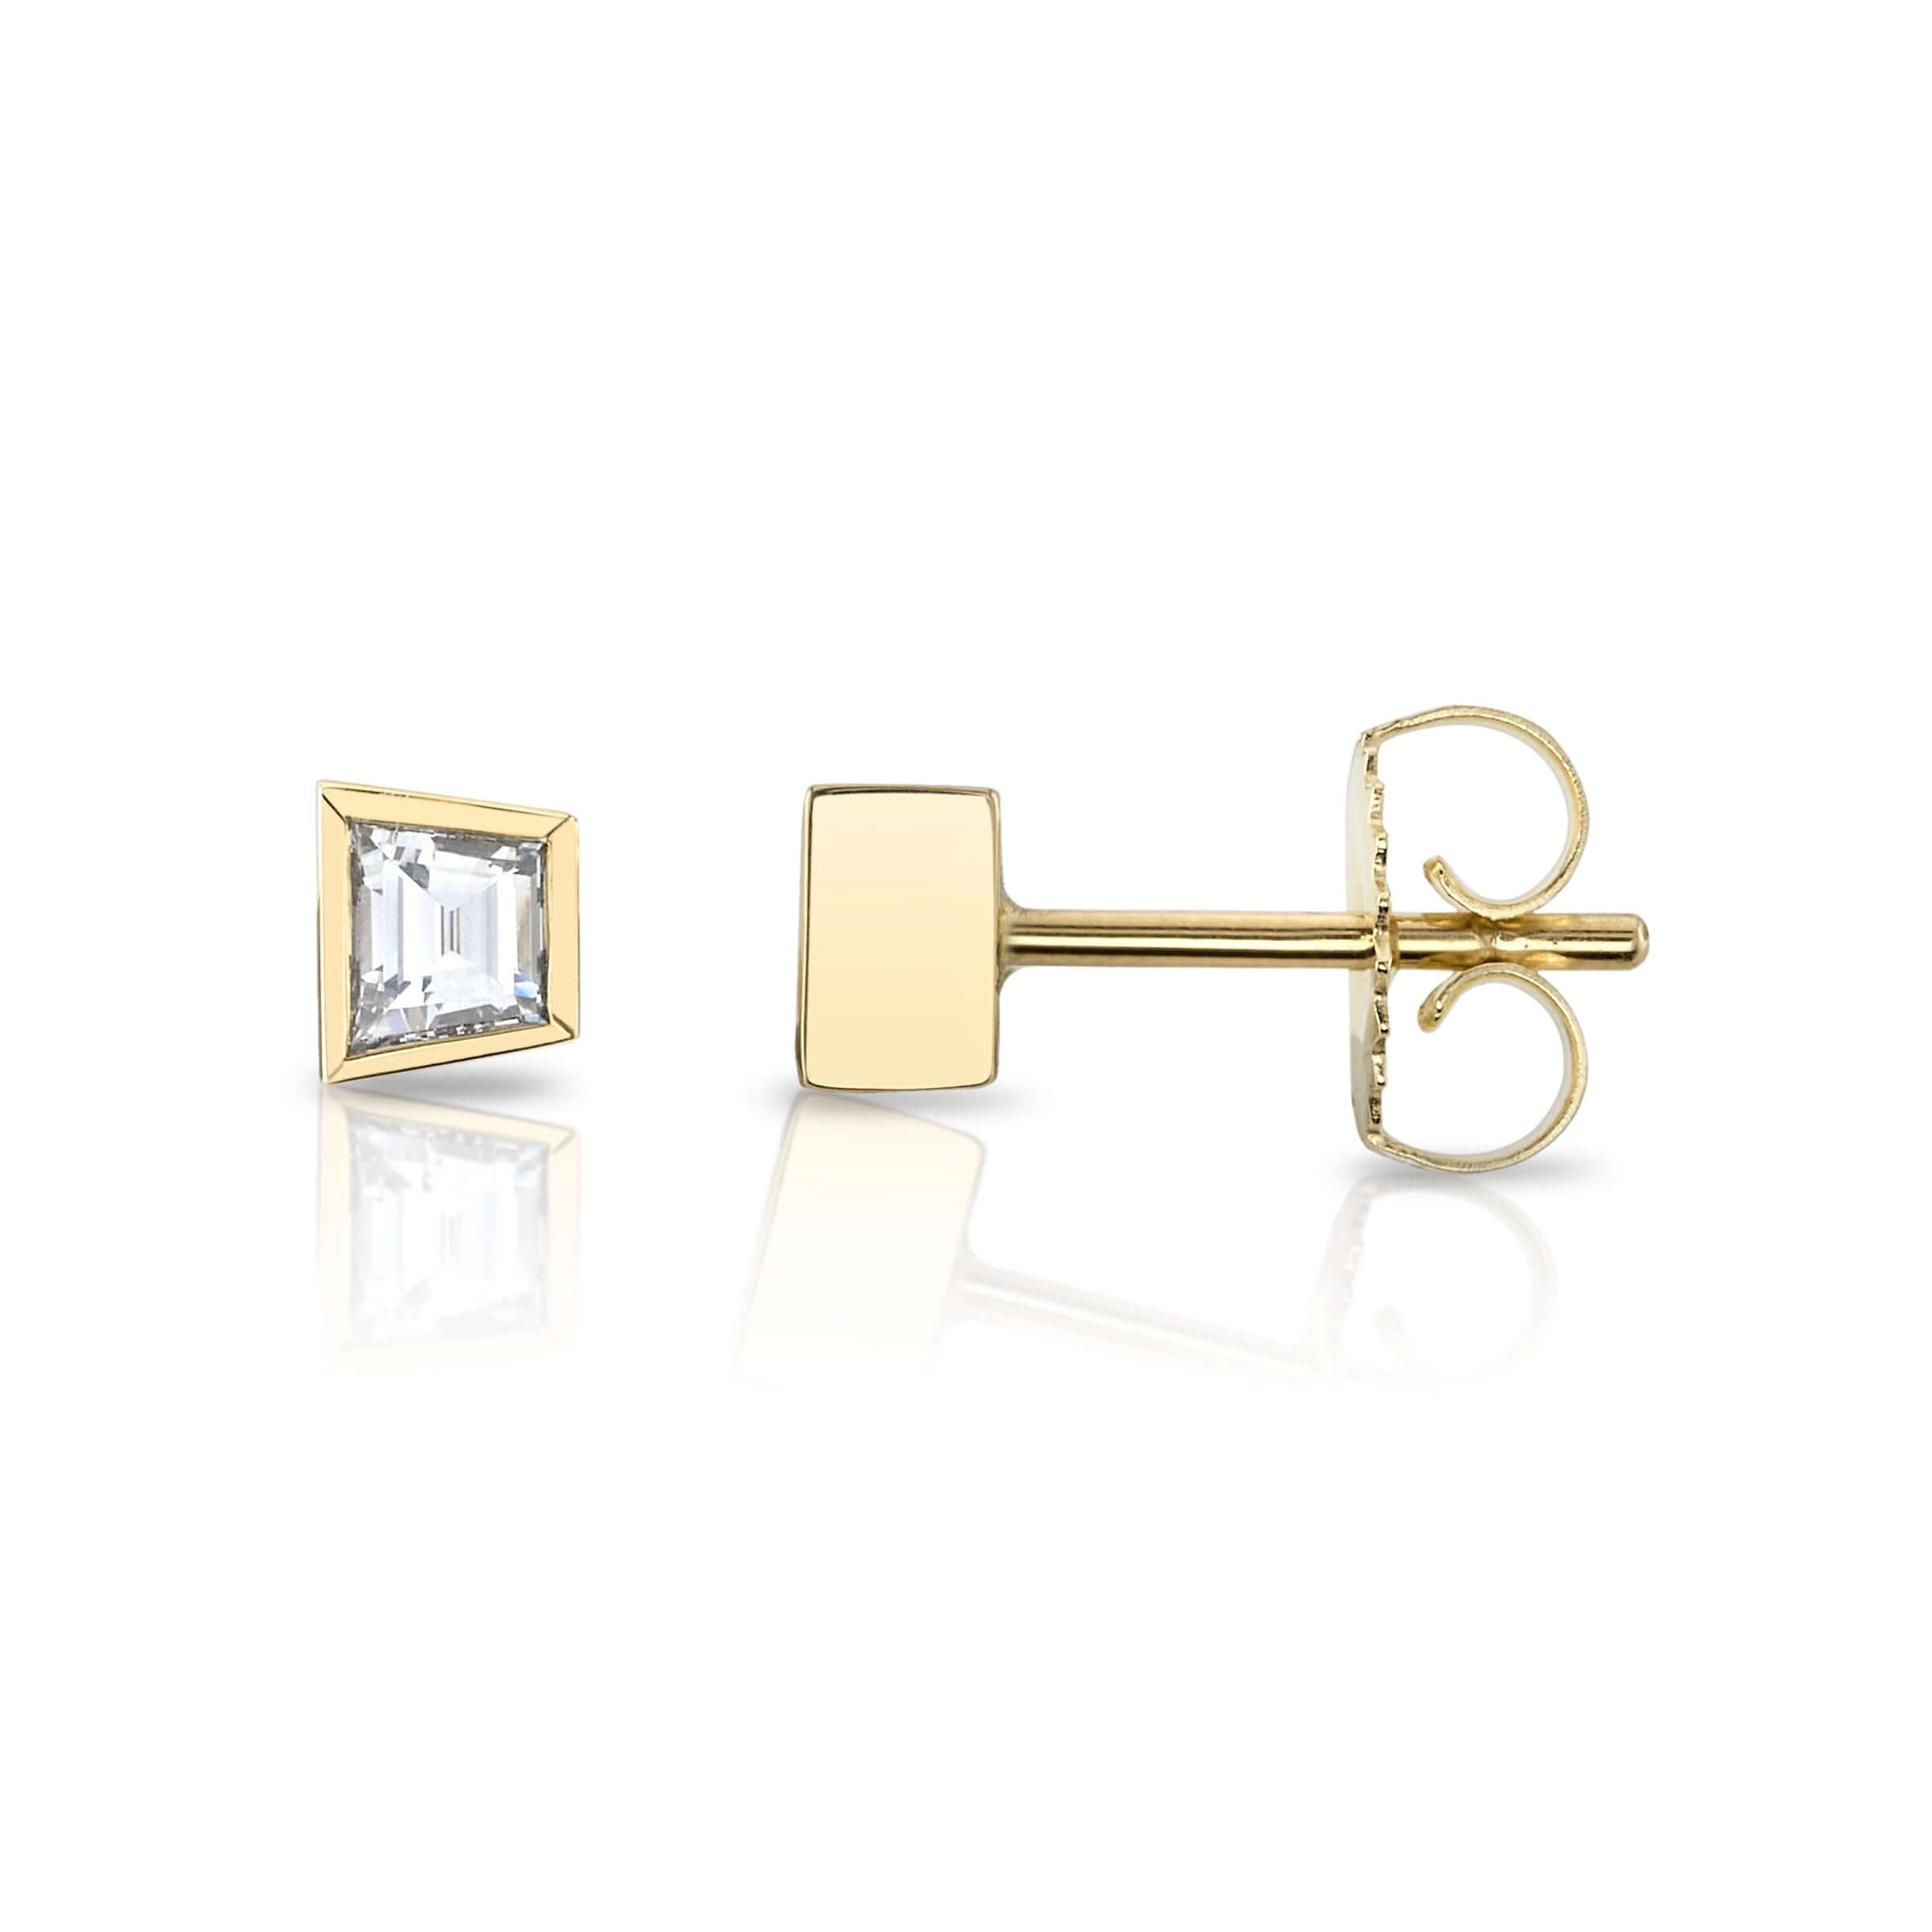 SINGLE STONE SLOANE STUDS | Earrings featuring 0.43ctw G/VS1 trapezoid cut diamonds bezel set in handcrafted 18K yellow gold stud earrings.